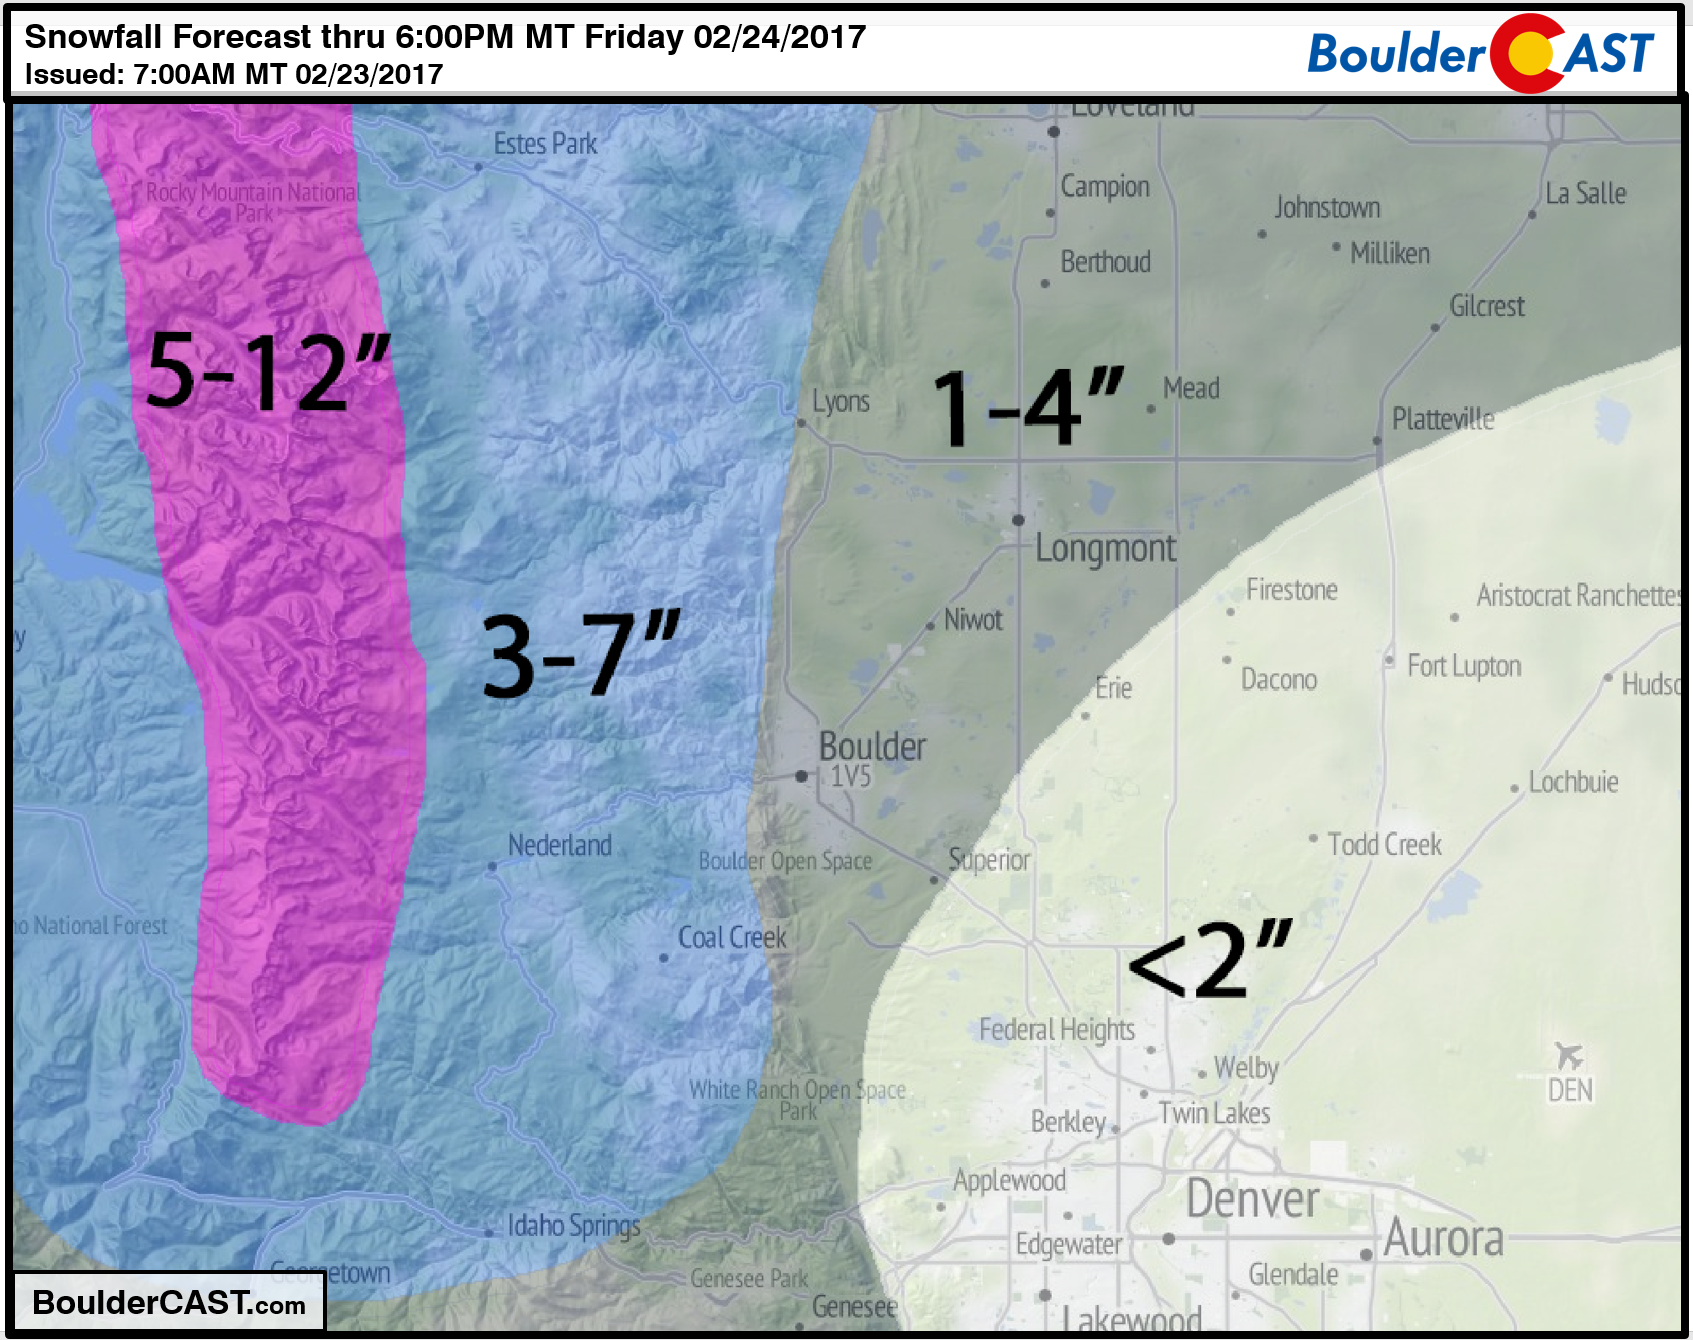 Snowfall_Forecast_February-23-24-2017_Denver_Colorado_BoulderCAST1